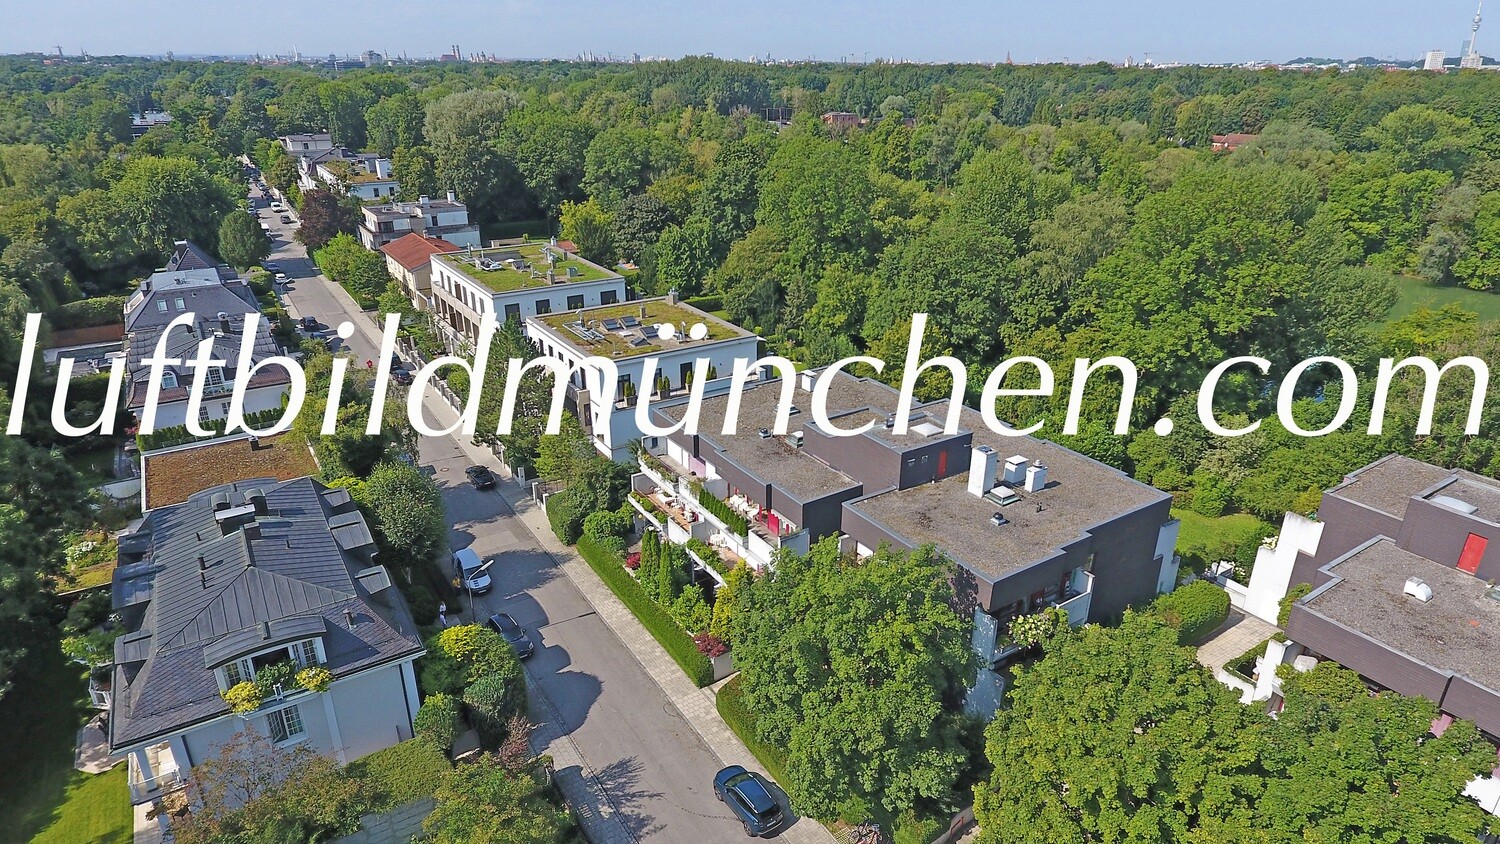 Luftbild, Foto von oben, Foto mit Drohne, München, Bayern, Wohngebiet, Herzogpark, Tucherpark, Bogenhausen, Isar, Stauwehr Oberföhring, Kraftwerk, Wasserkraftwerk, Villengebiet, Luxus,